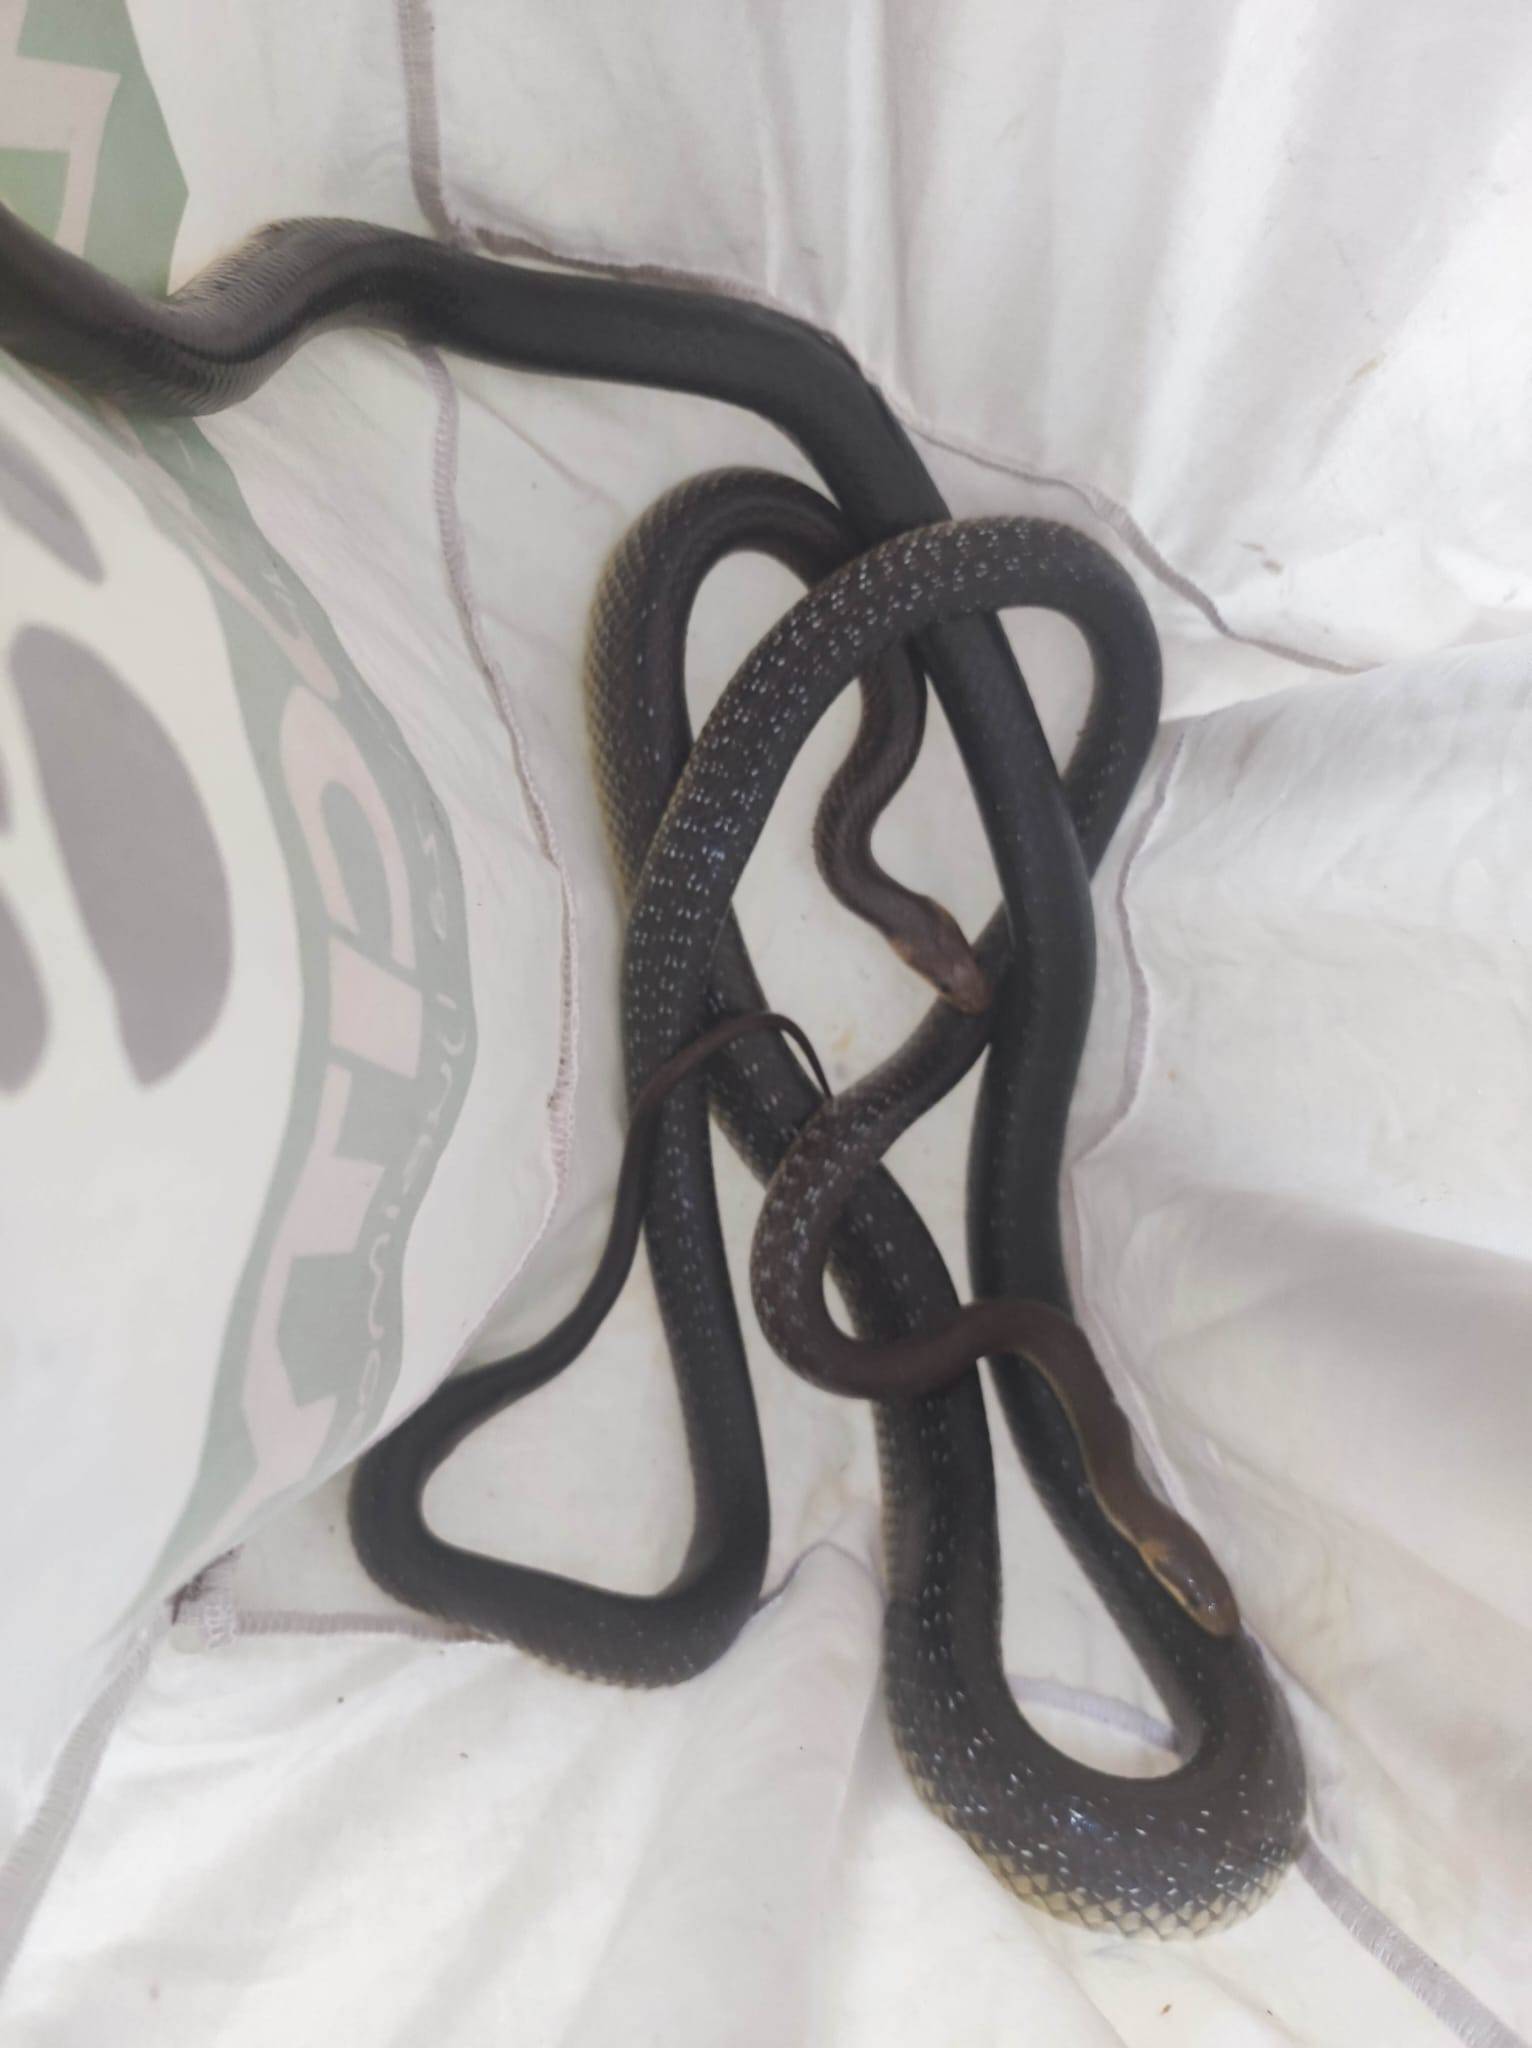 Najezda zmija: U Vrbovskom se zmije uvukle u grede, u kući u Zagrebu ih pronašli pri parenju